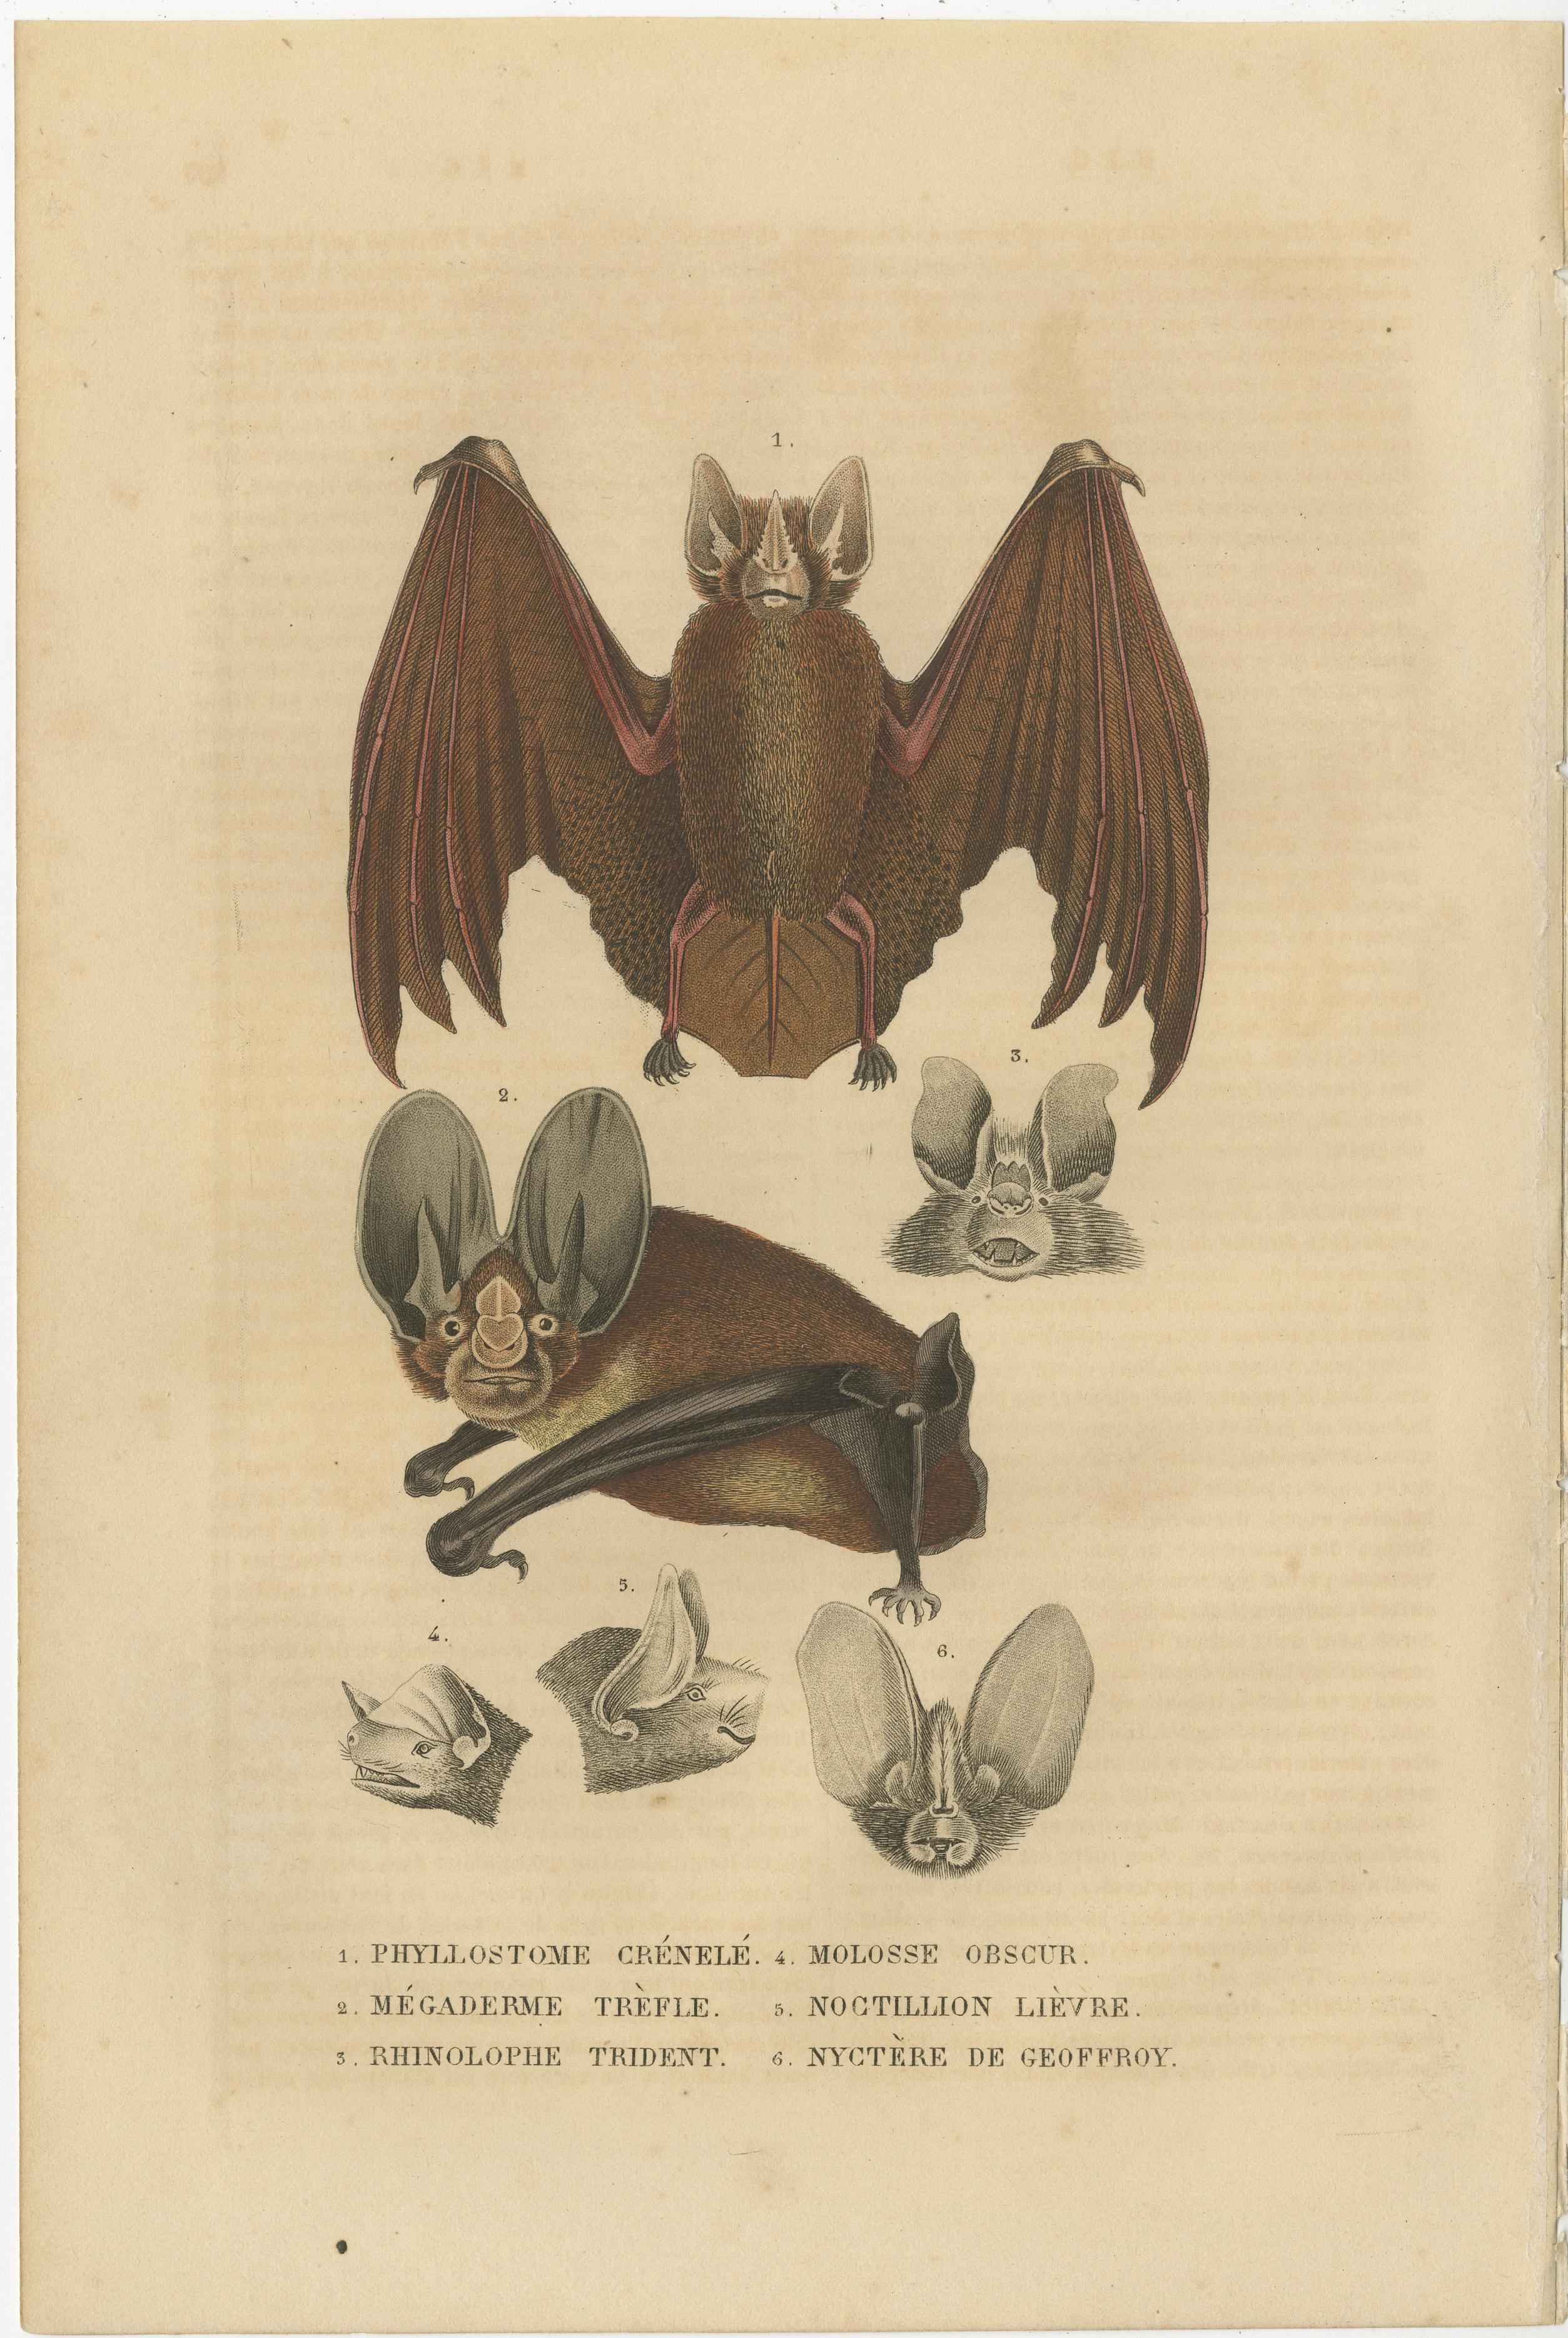 Bei dem Druck handelt es sich um einen handkolorierten Stich aus dem Jahr 1845, der eine Auswahl von sechs verschiedenen Fledermausarten zeigt, die jeweils sorgfältig illustriert sind, um ihre besonderen anatomischen Merkmale hervorzuheben. Diese